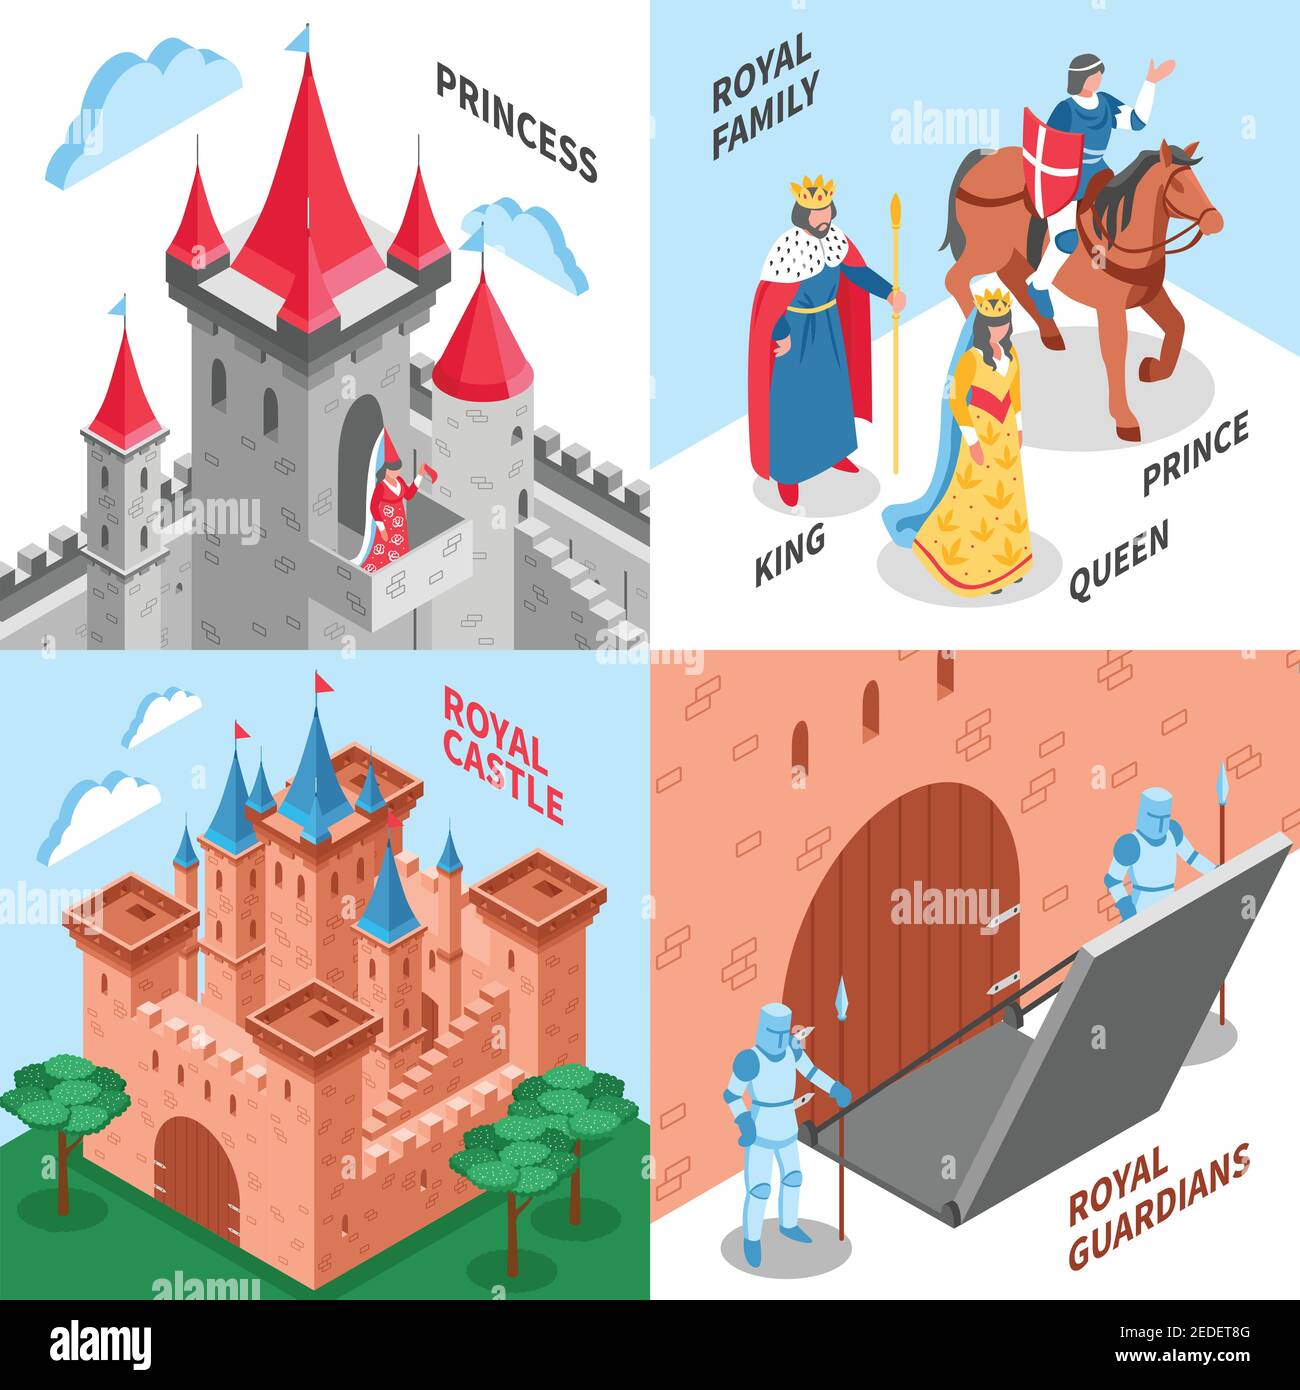 Quatre concepts carrés de design de château royal avec famille royale de princesse illustration vectorielle du château royal et des gardiens royaux Illustration de Vecteur